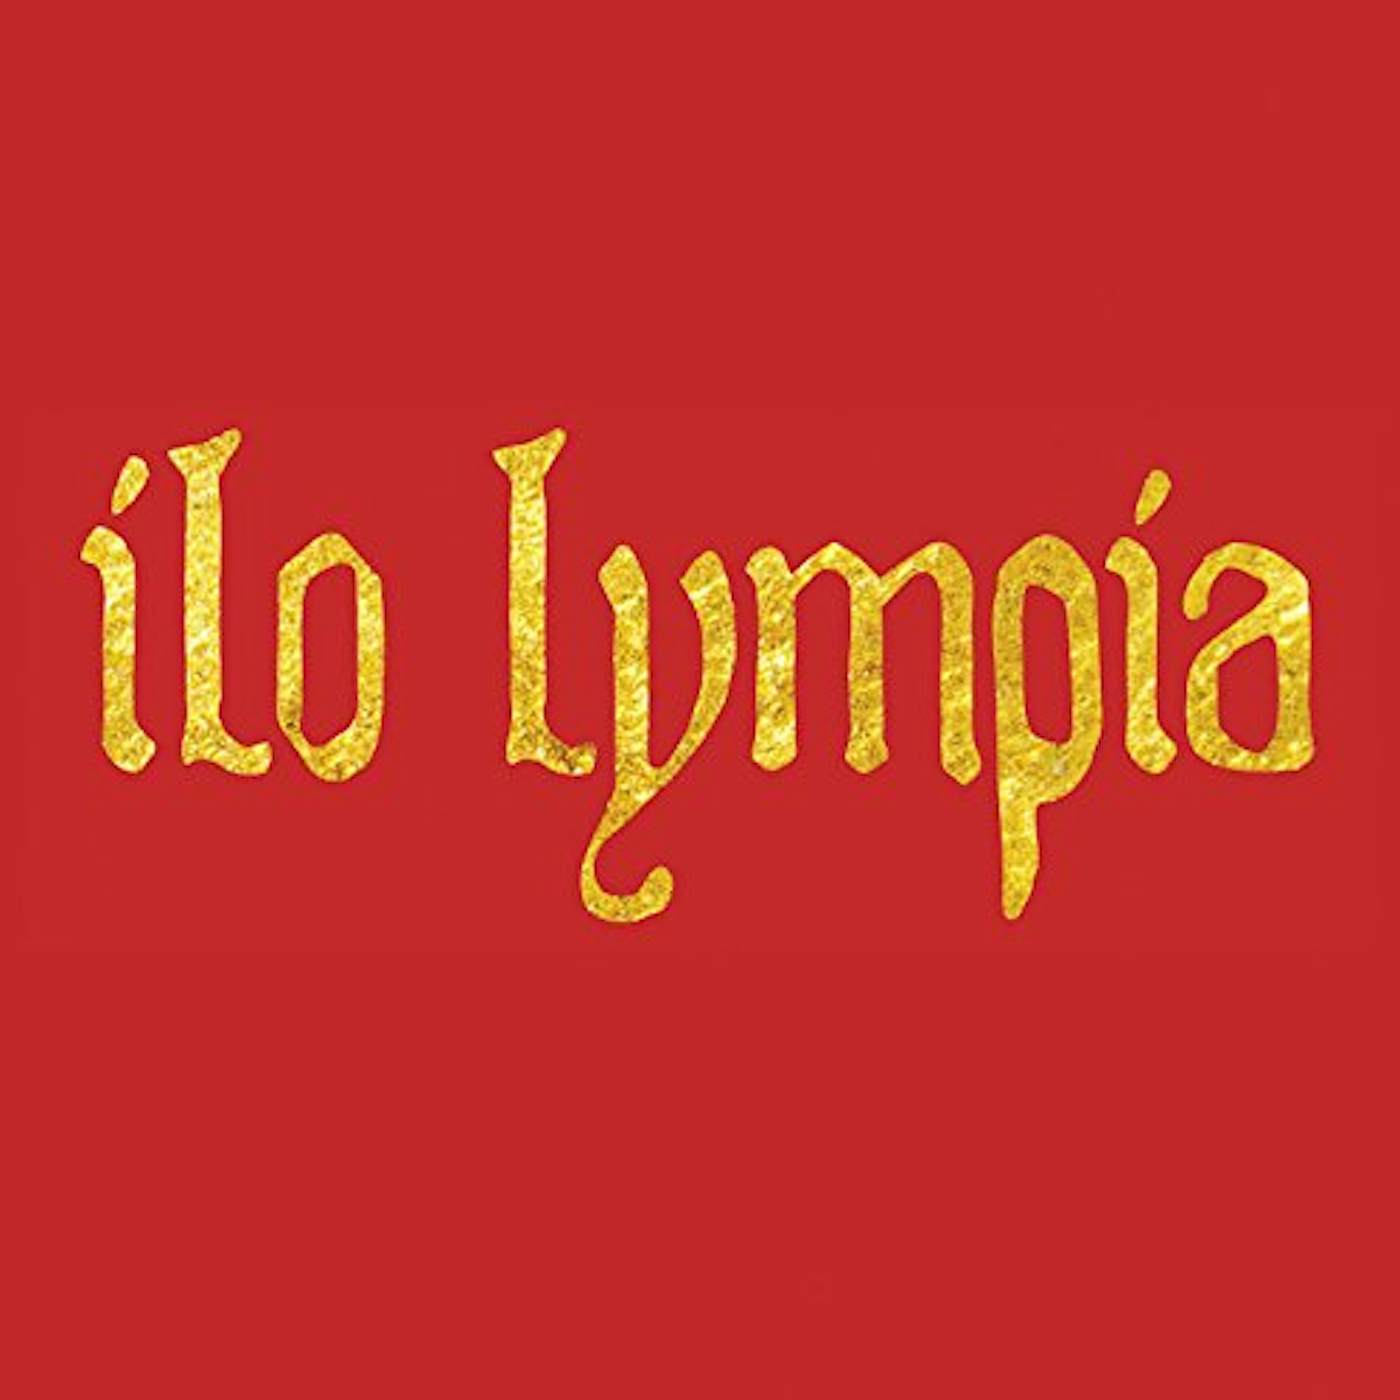 Camille ILO LYMPIA CD